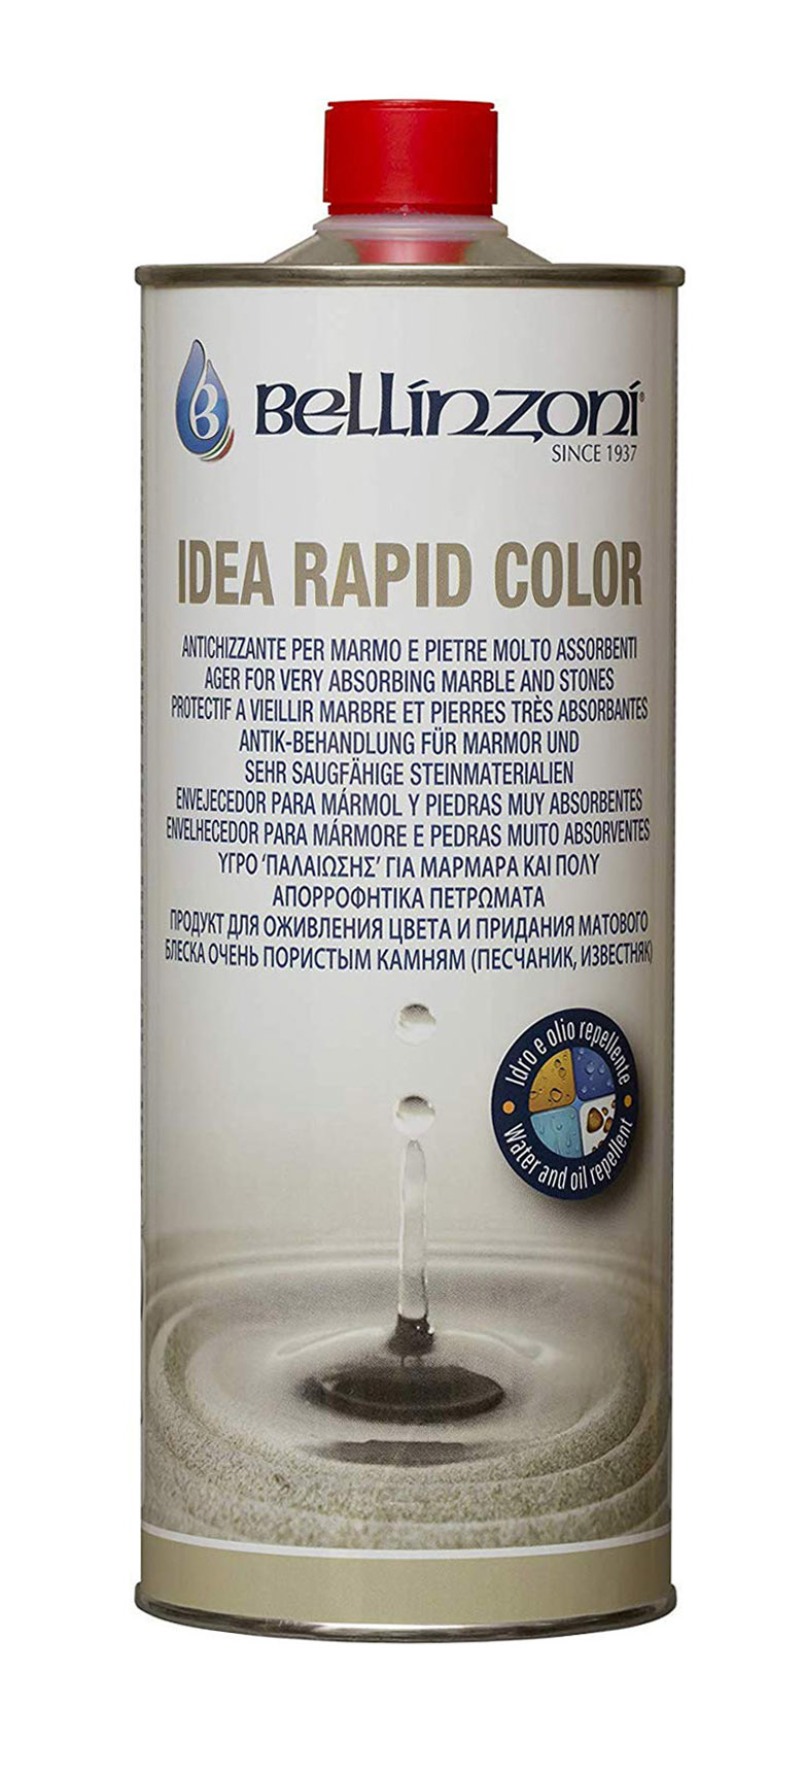 Bellinzoni - Idea Rapid Color / 1 liter